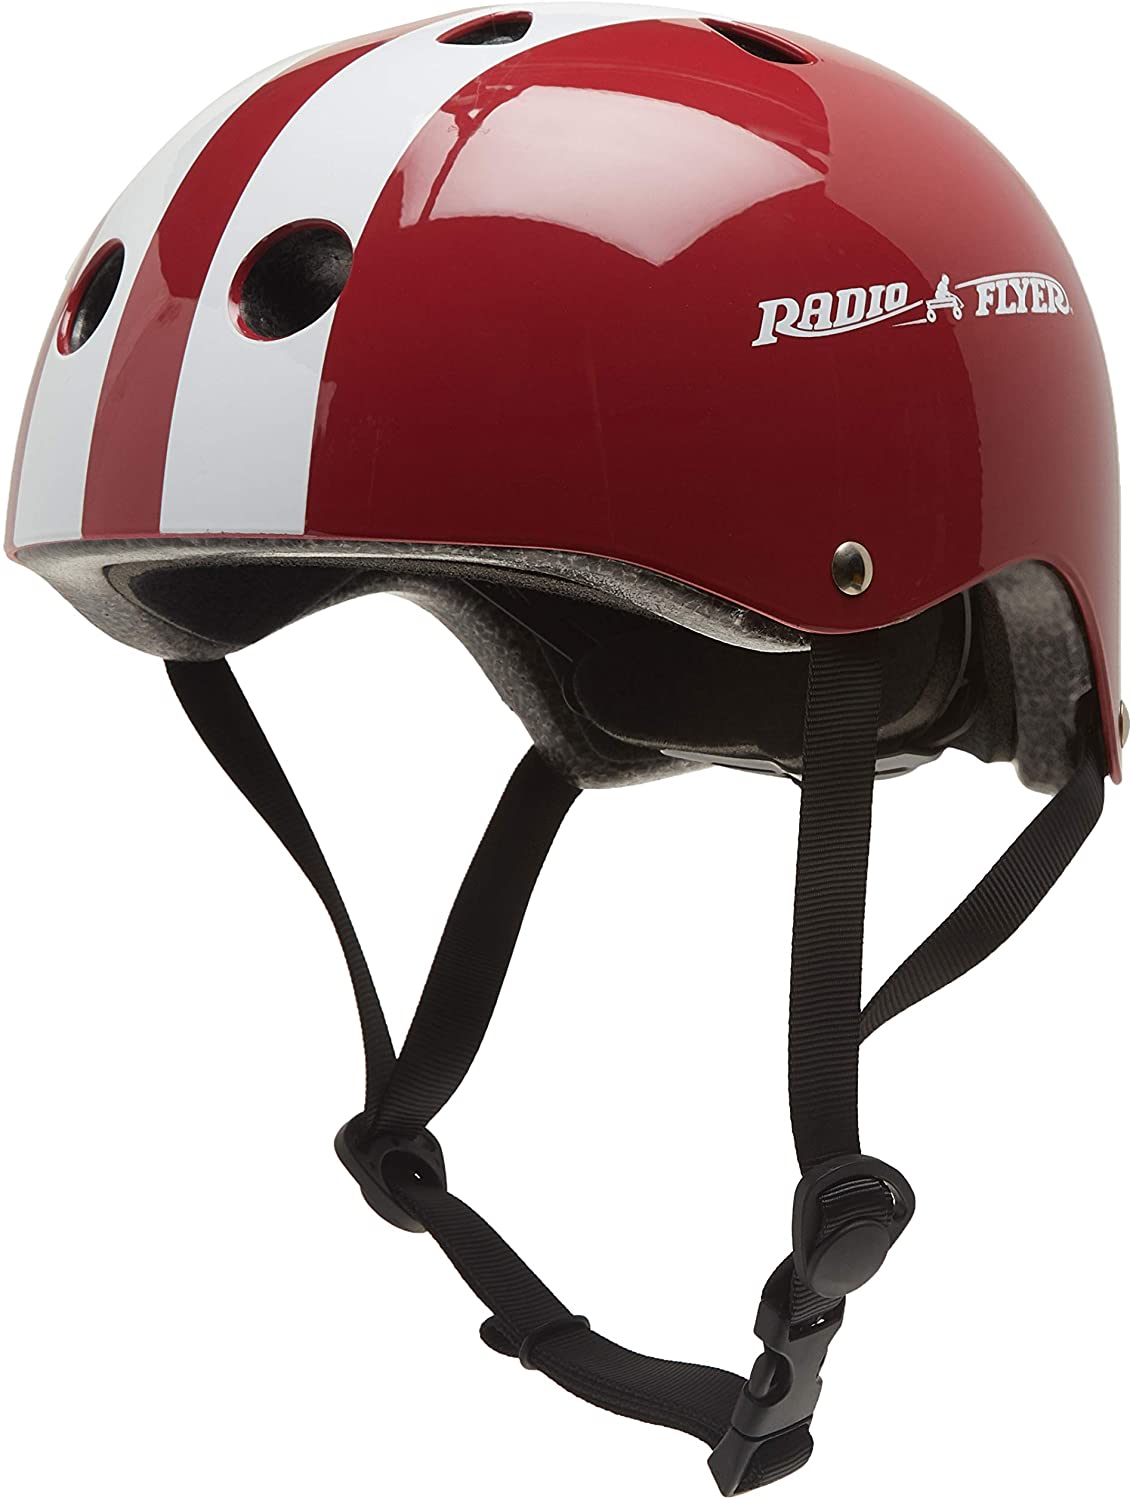 Toddler Bike Helmet